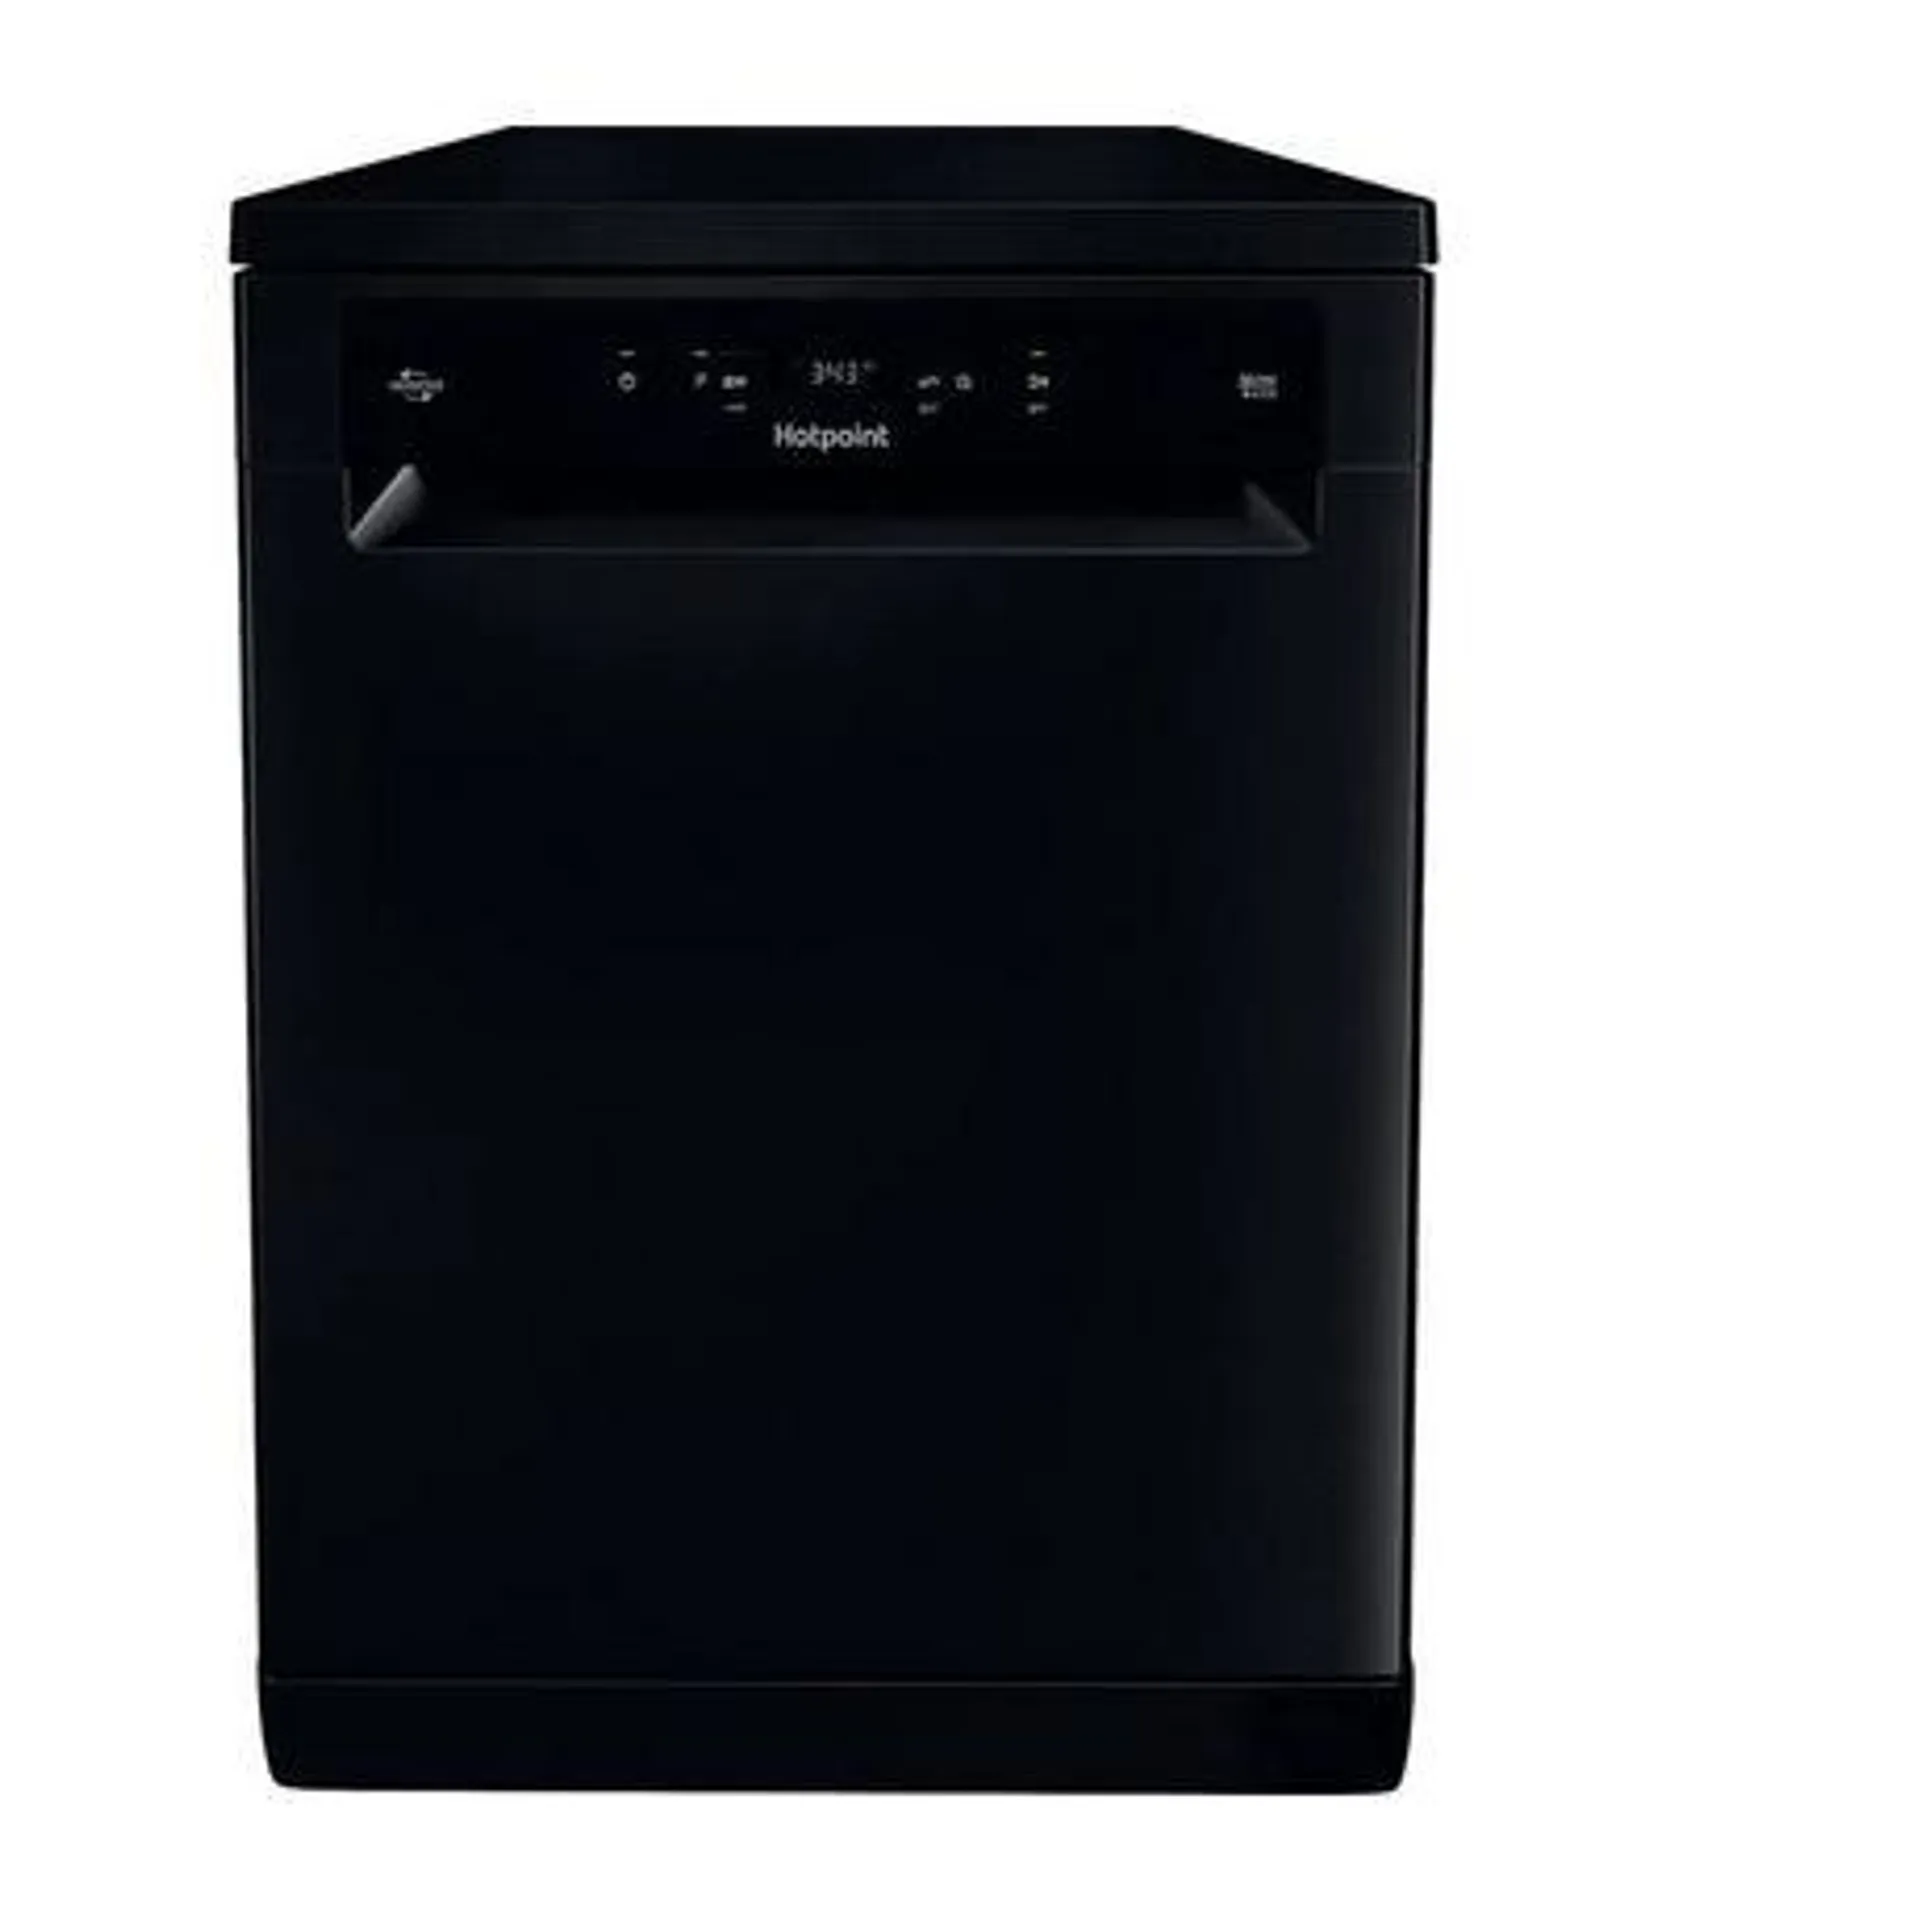 Hotpoint HFC3C26WCBUK Freestanding Full-Size Dishwasher